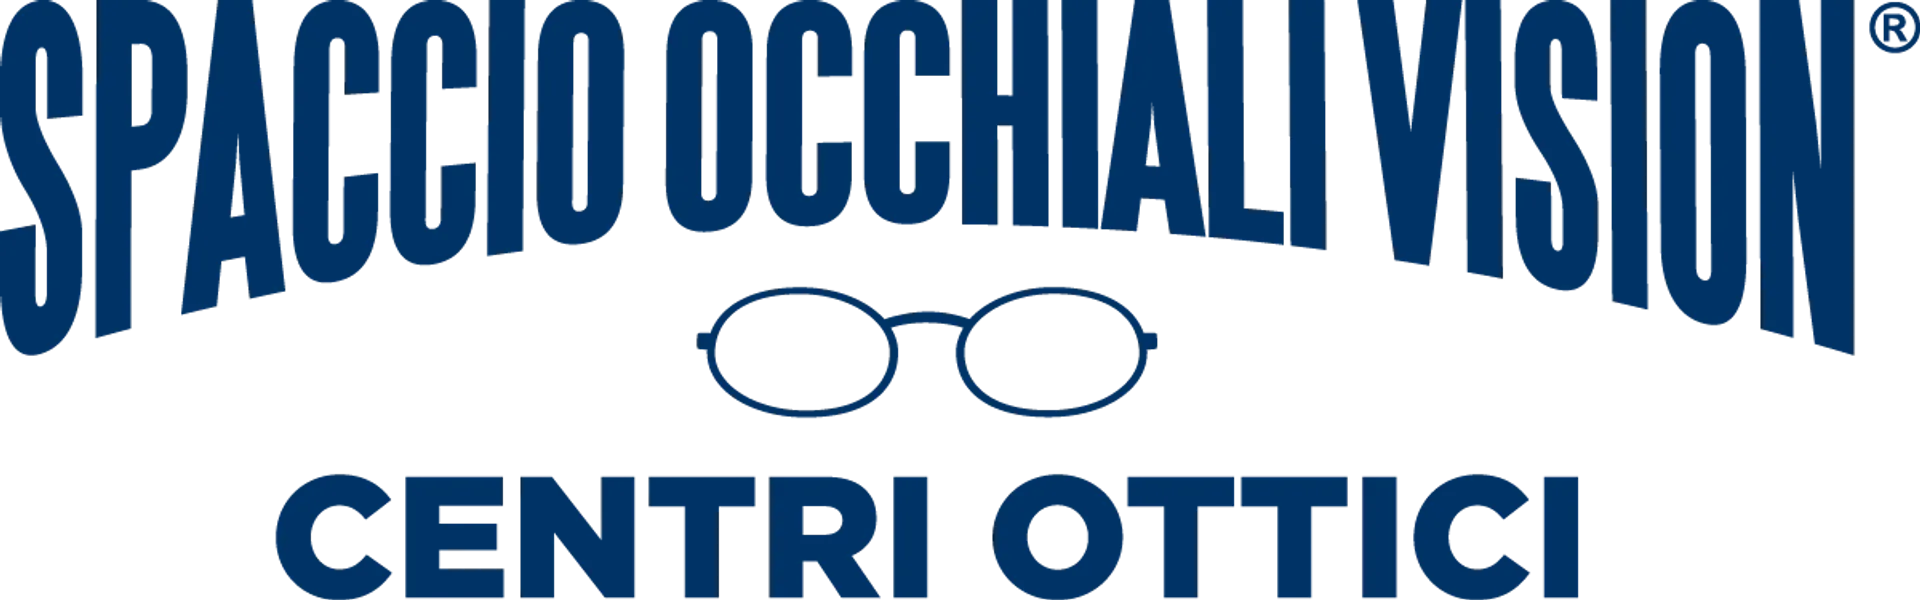 SPACCIO OCCHIALI VISION logo